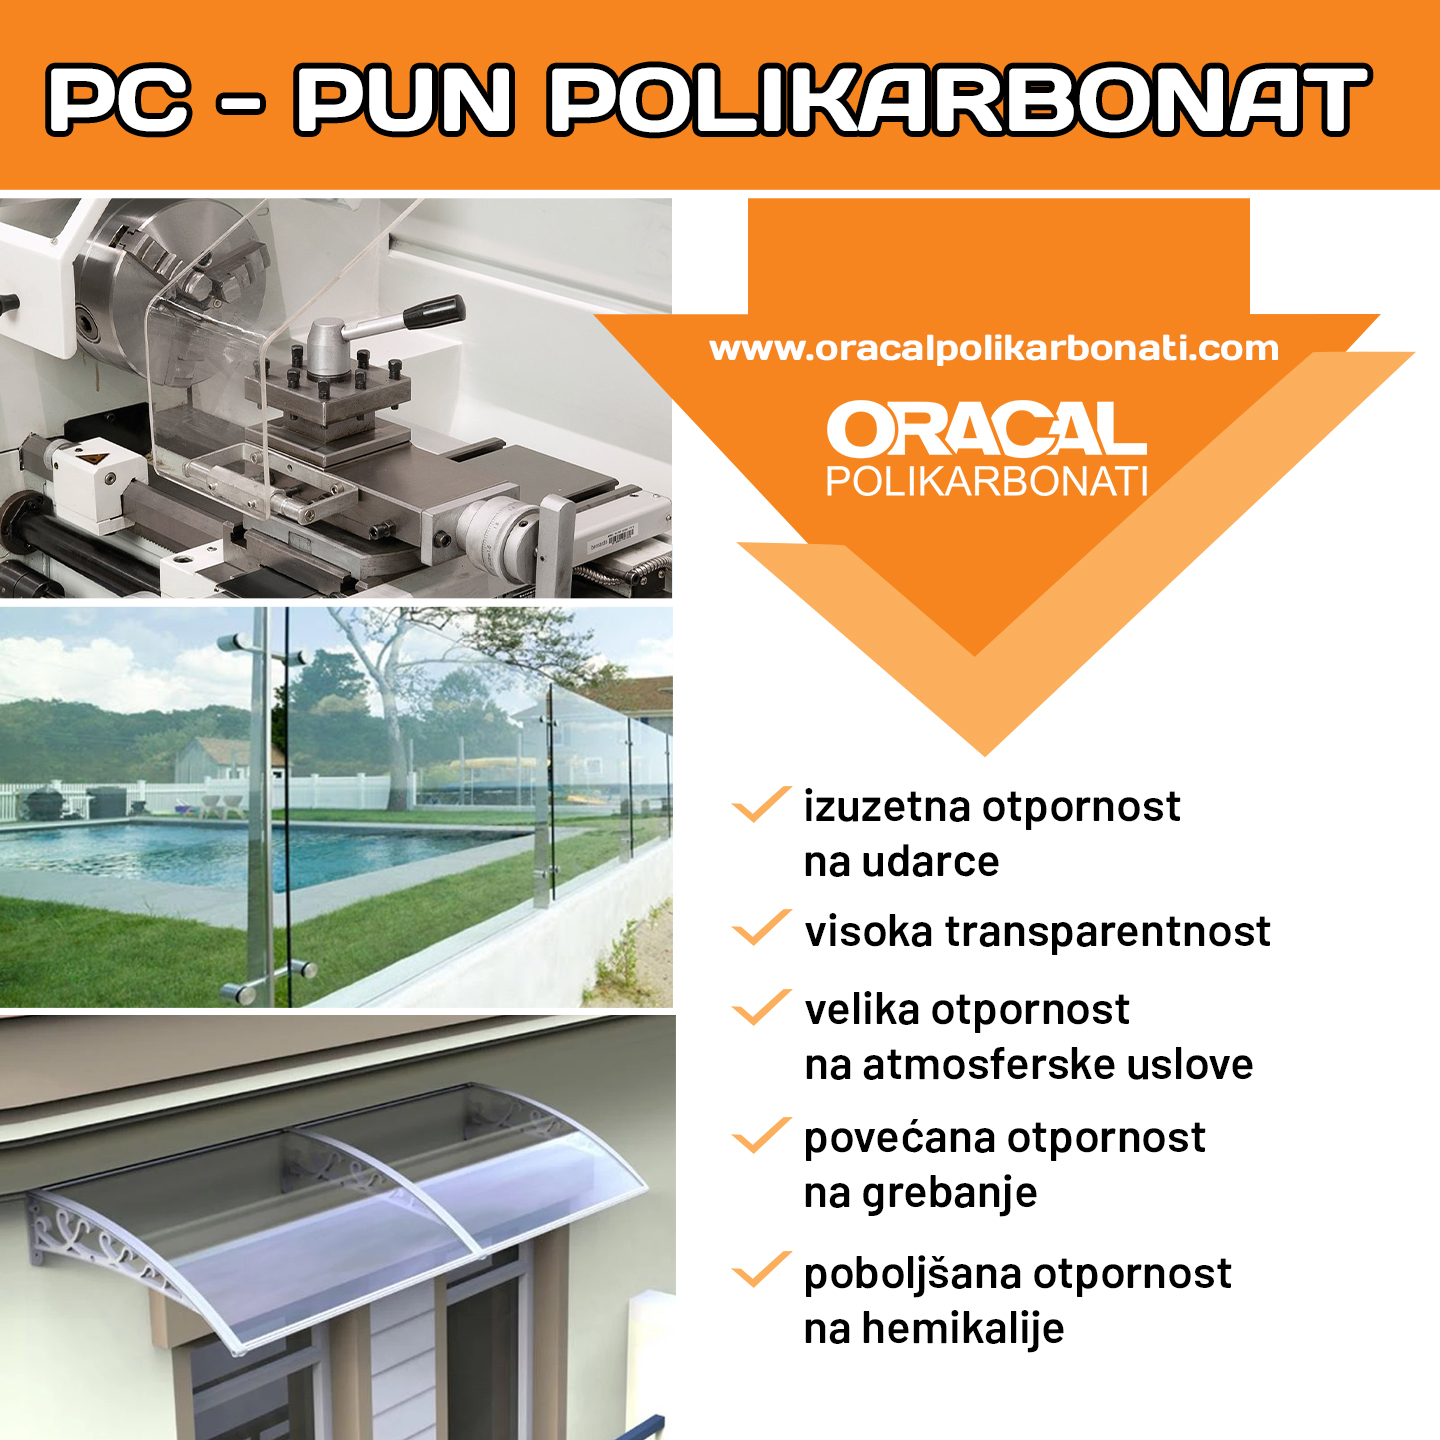 Pun polikarbonat - PC ploče